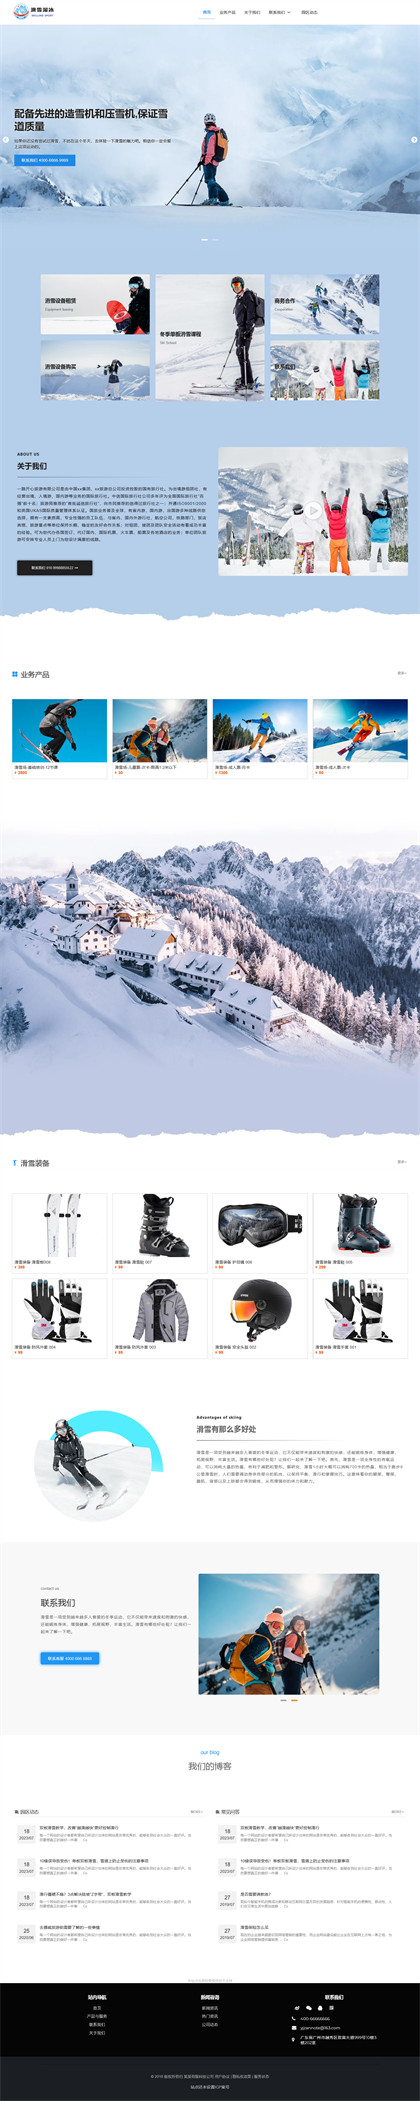 滑雪场-溜冰场-滑雪培训-户外滑雪场-风景区-网站模板网站模板预览图片